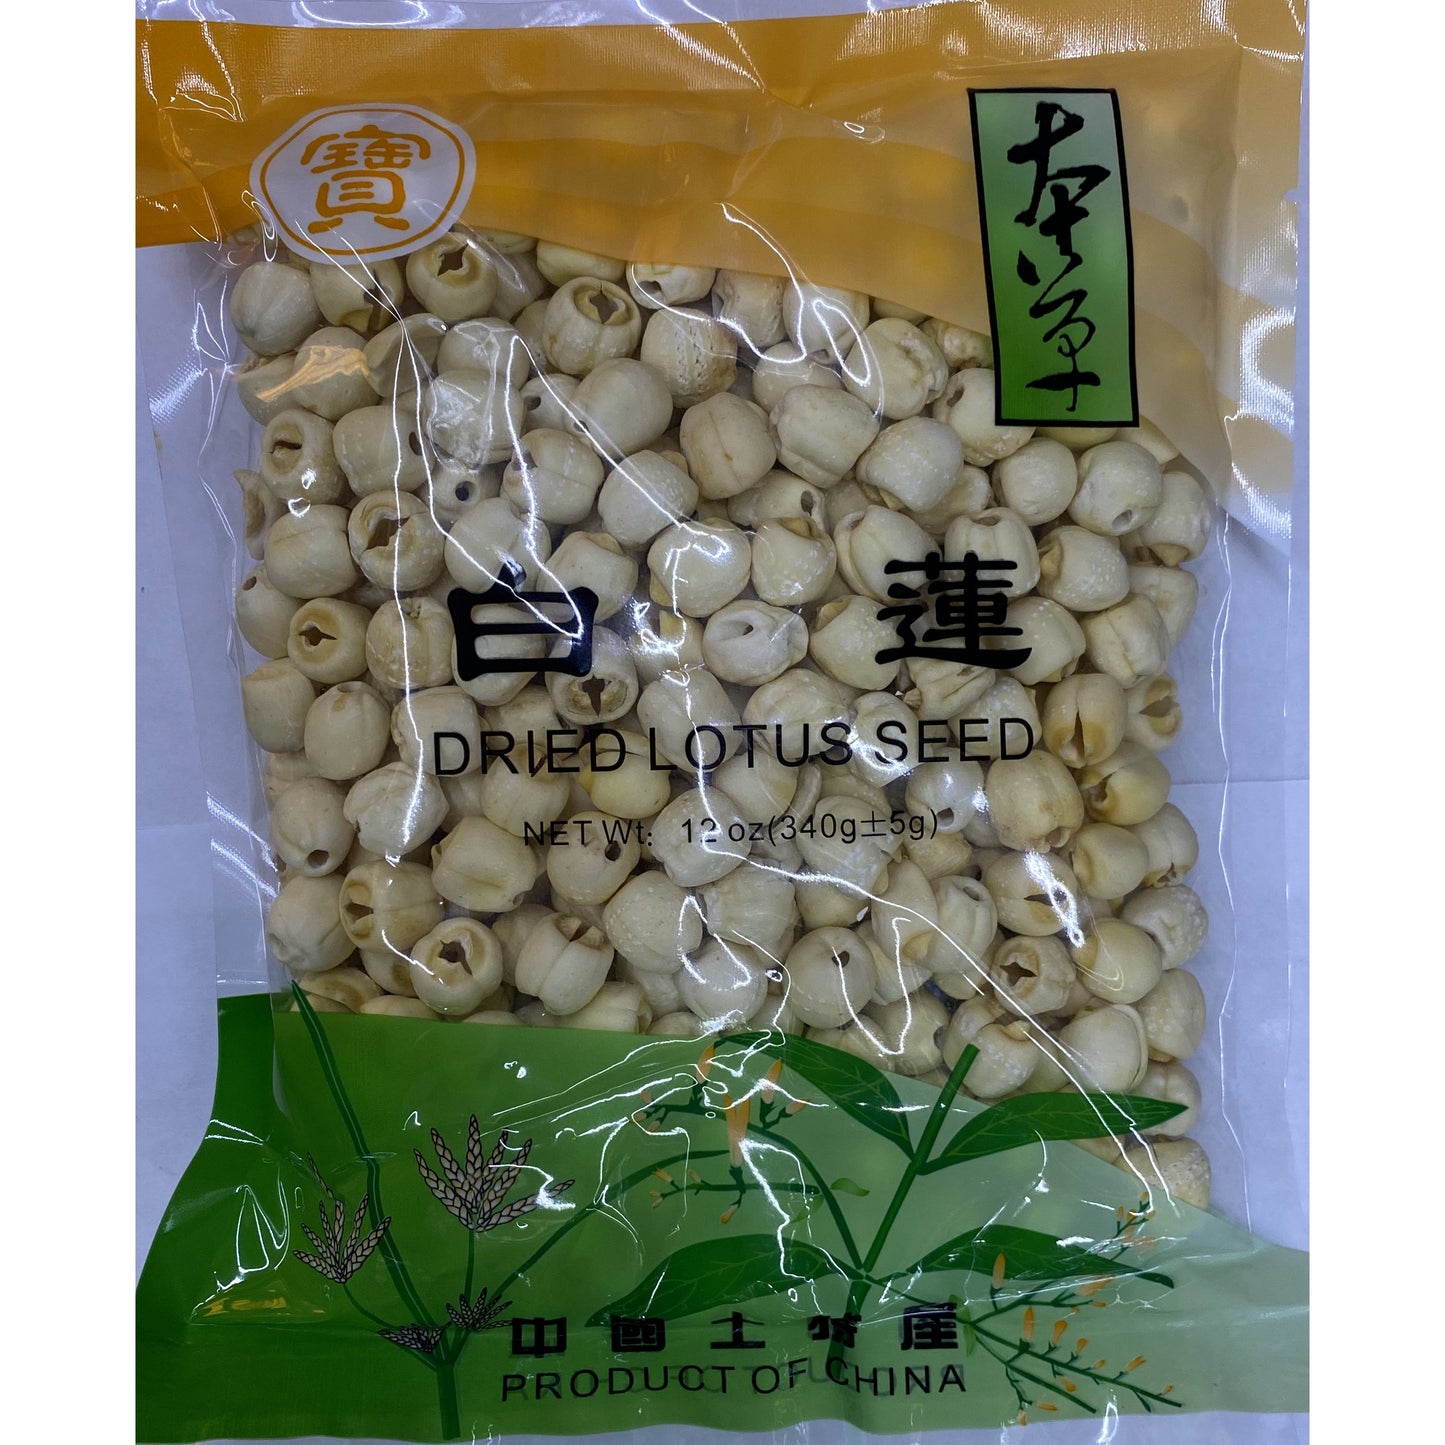 1-herbal white lotus seeds (12 oz)